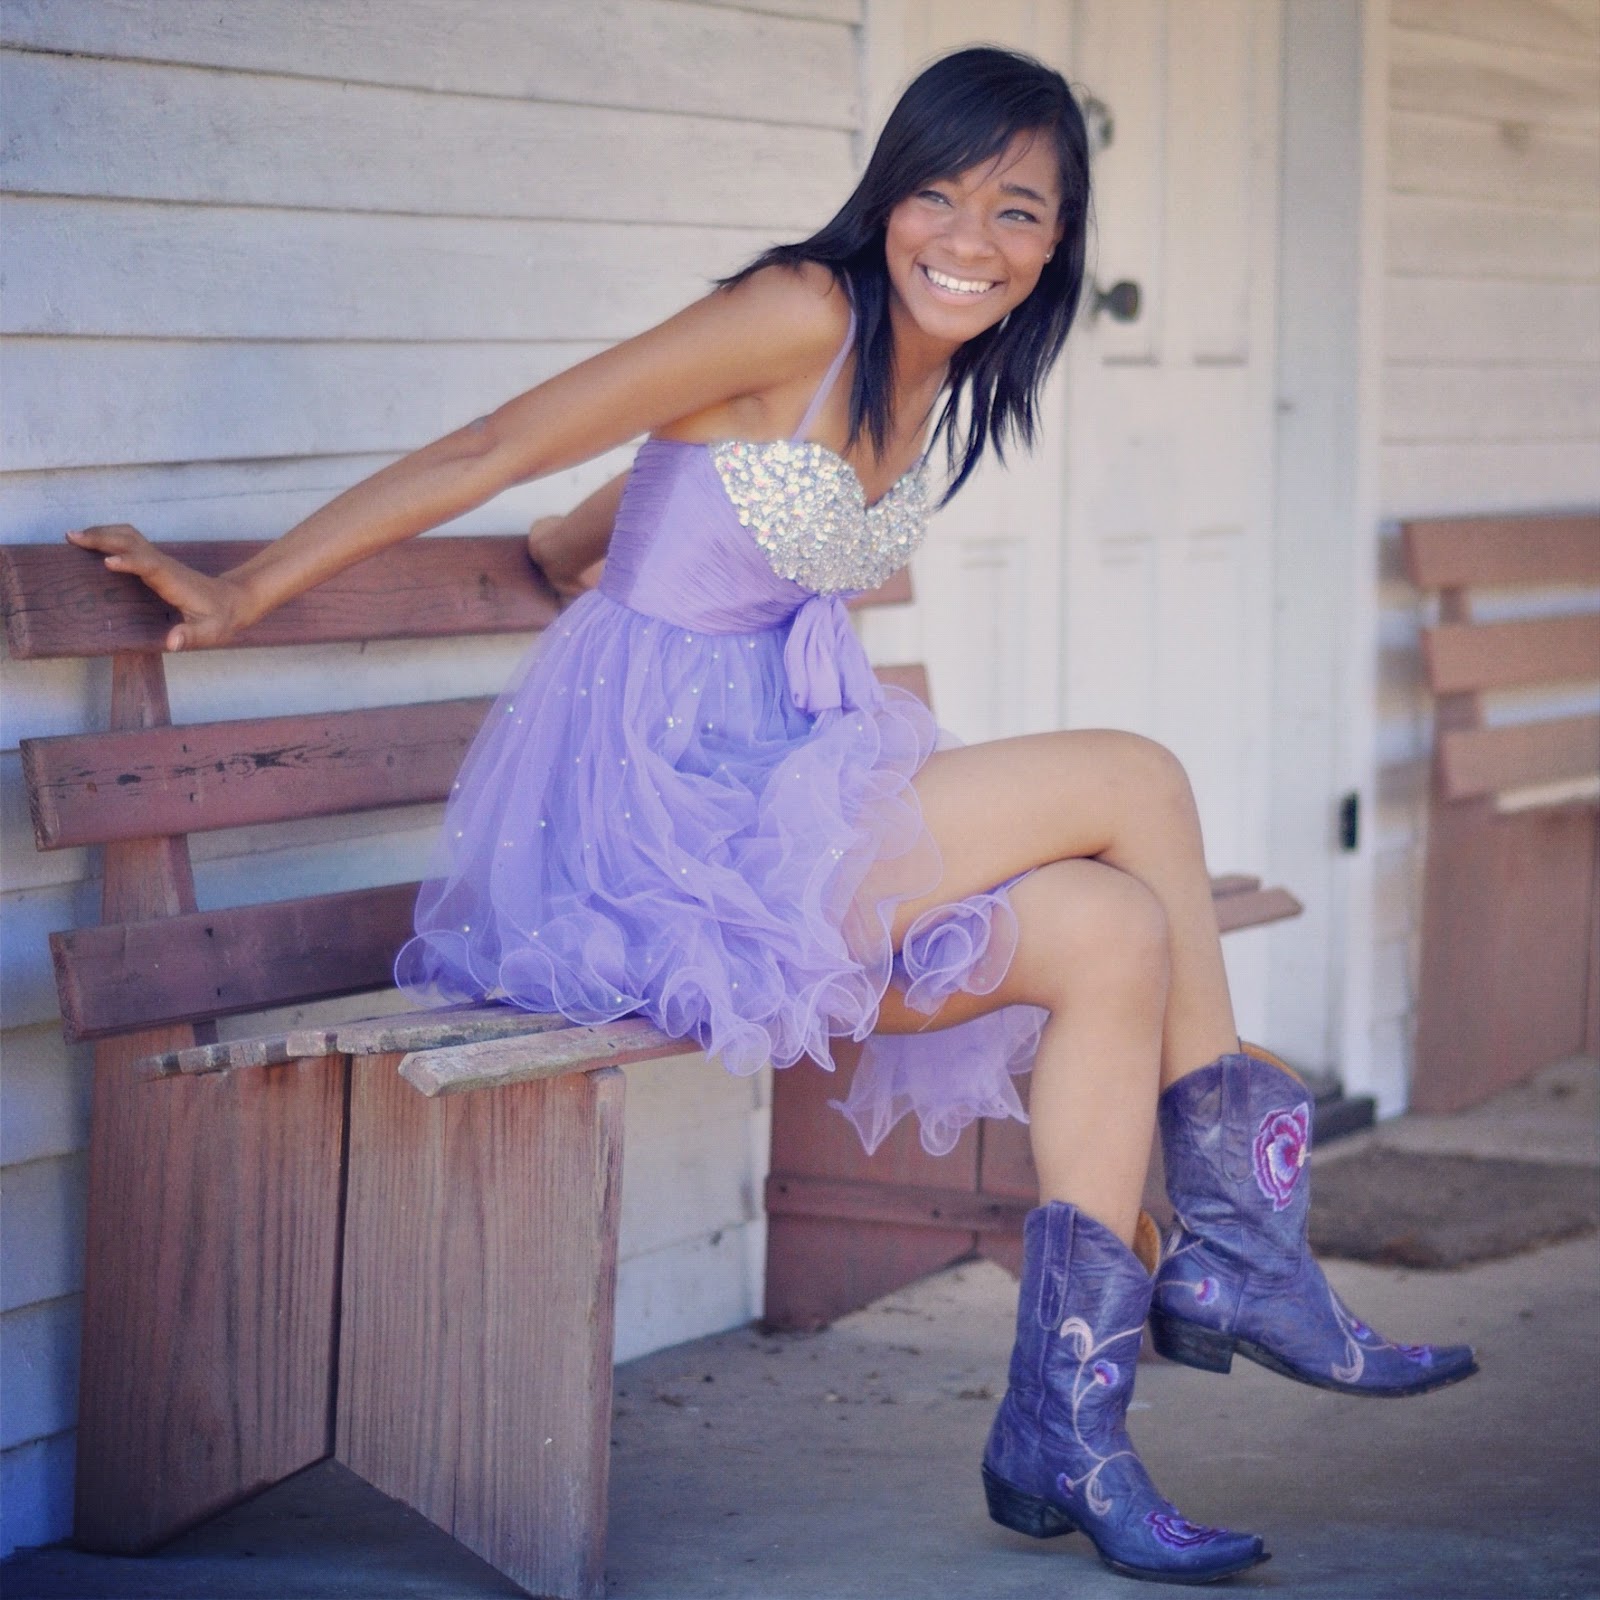 http://1.bp.blogspot.com/-U6JdOLy3P3Q/T8mZJlt2ayI/AAAAAAAAGS0/5Sn26q7ZoYg/s1600/Imaj-Purple-Dress-Boots.JPG